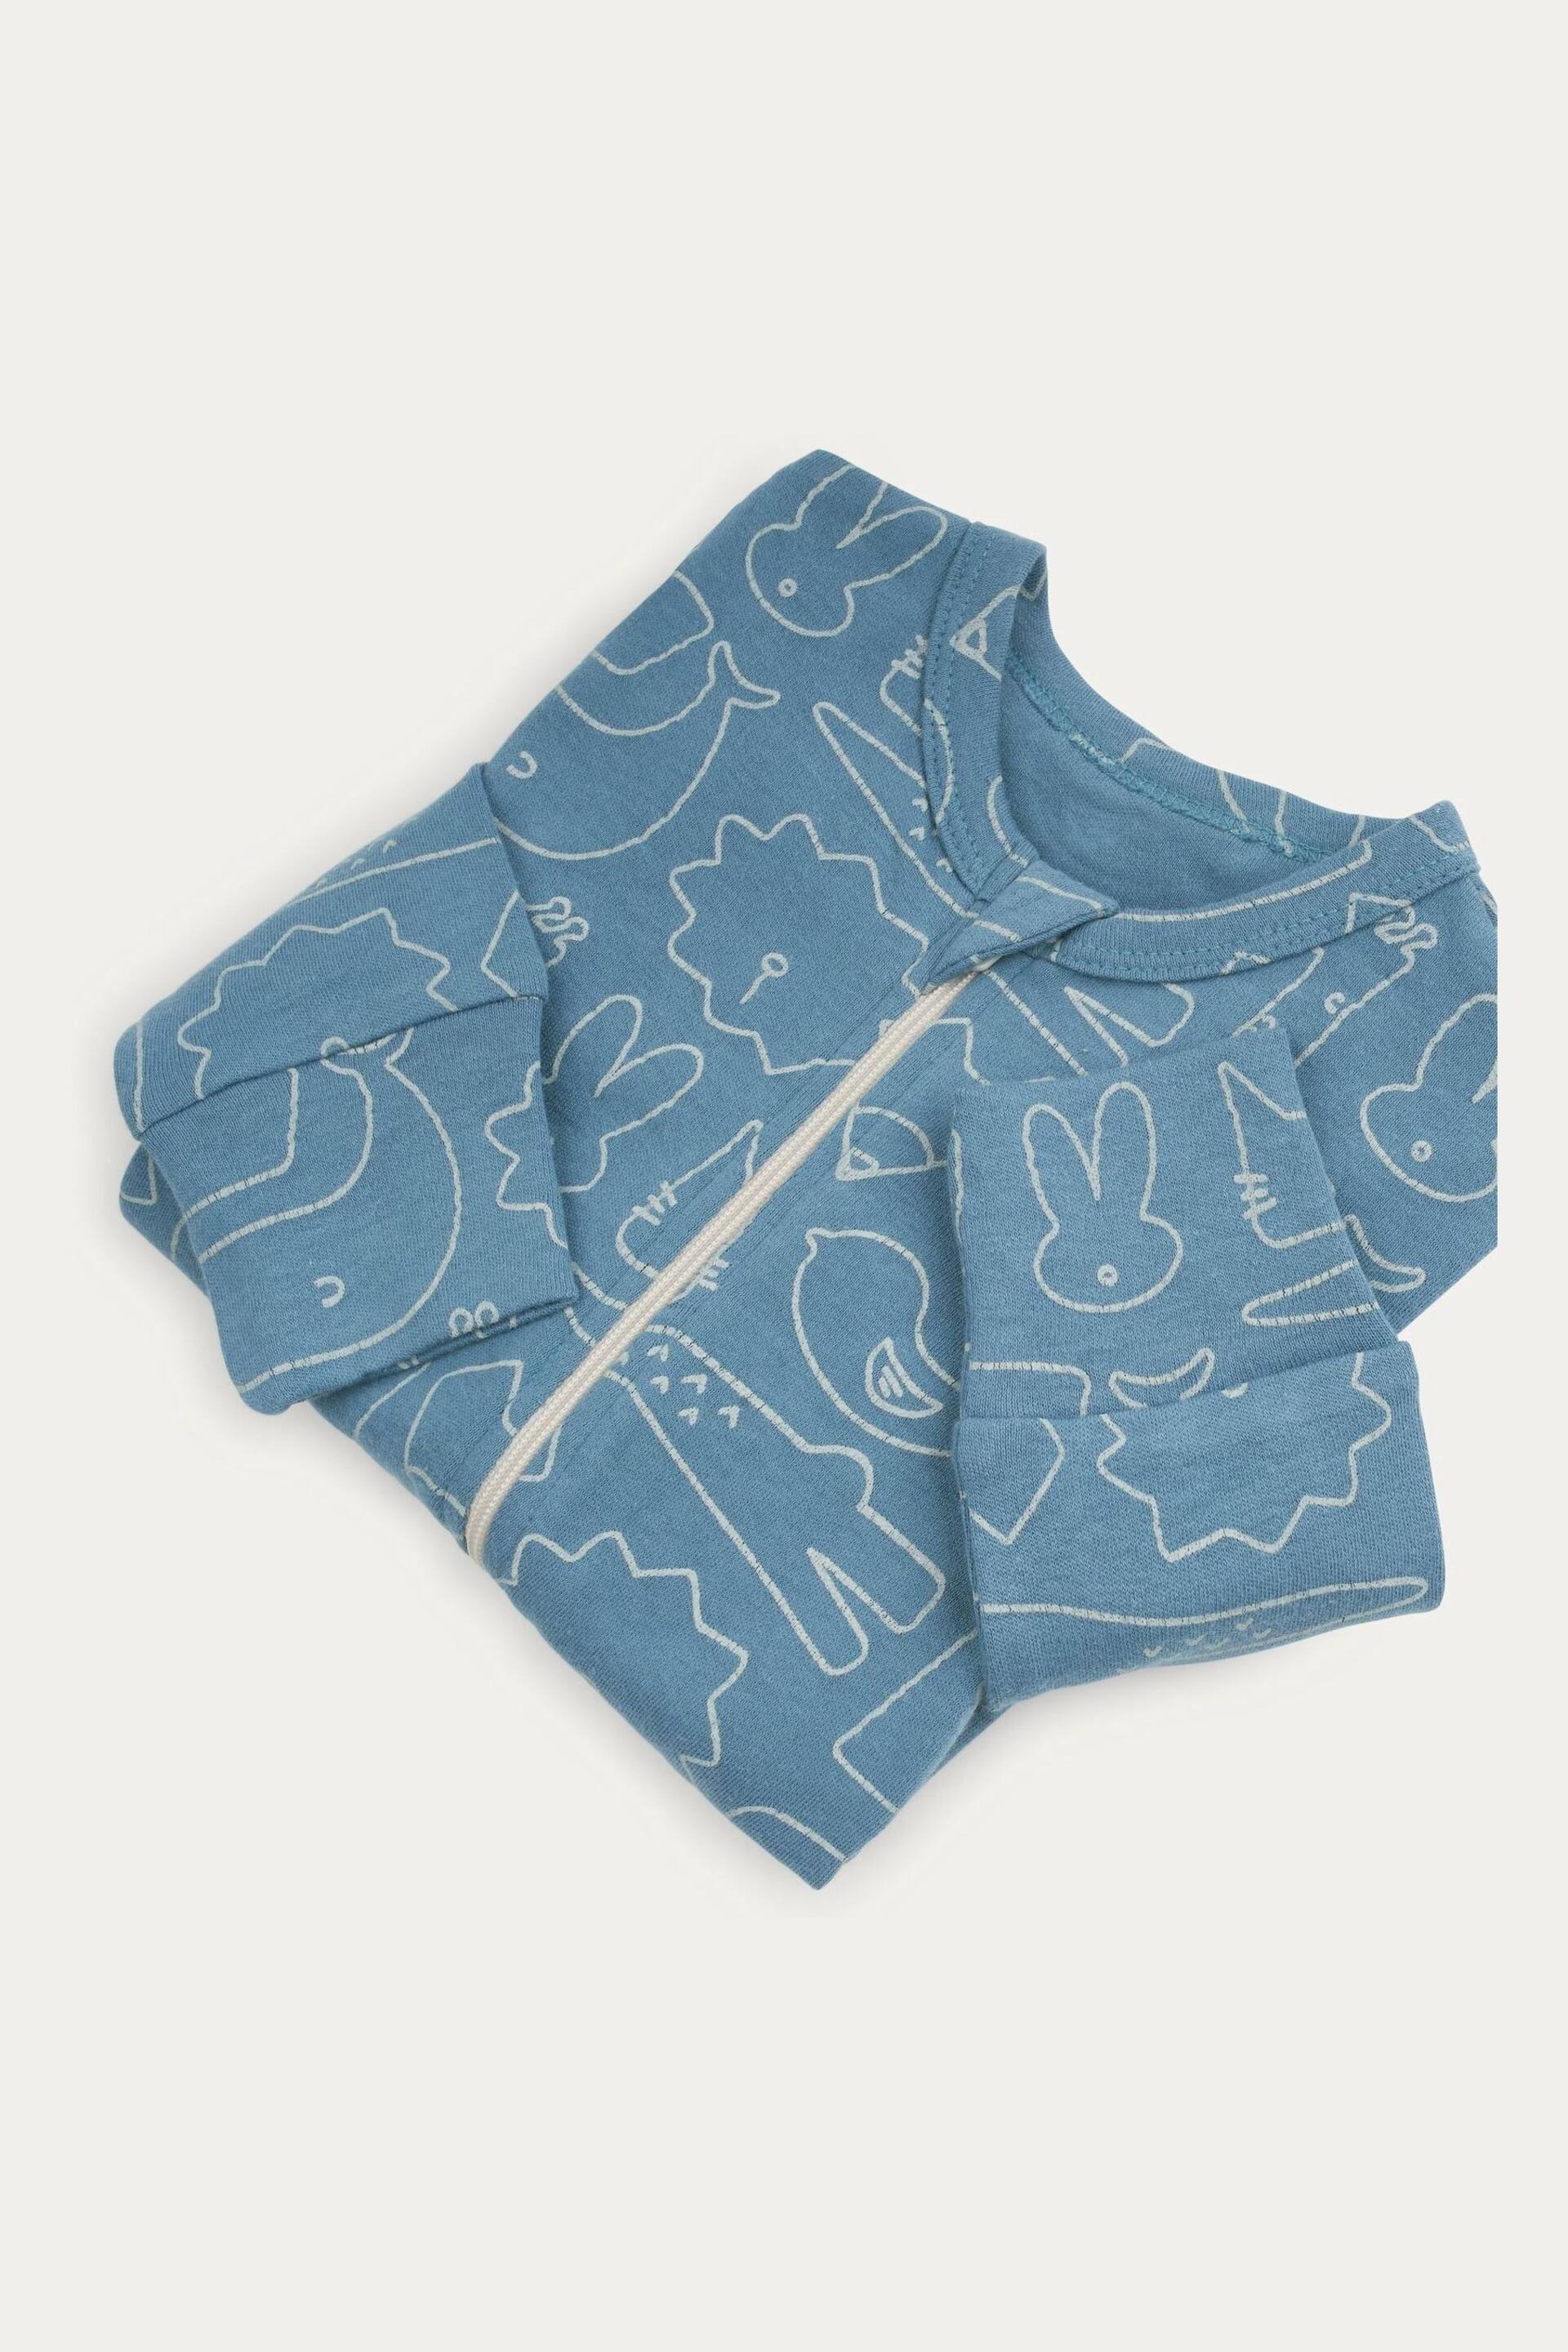 KIDLY Organic Zip Blue/Brown Sleepsuit - Image 2 of 5